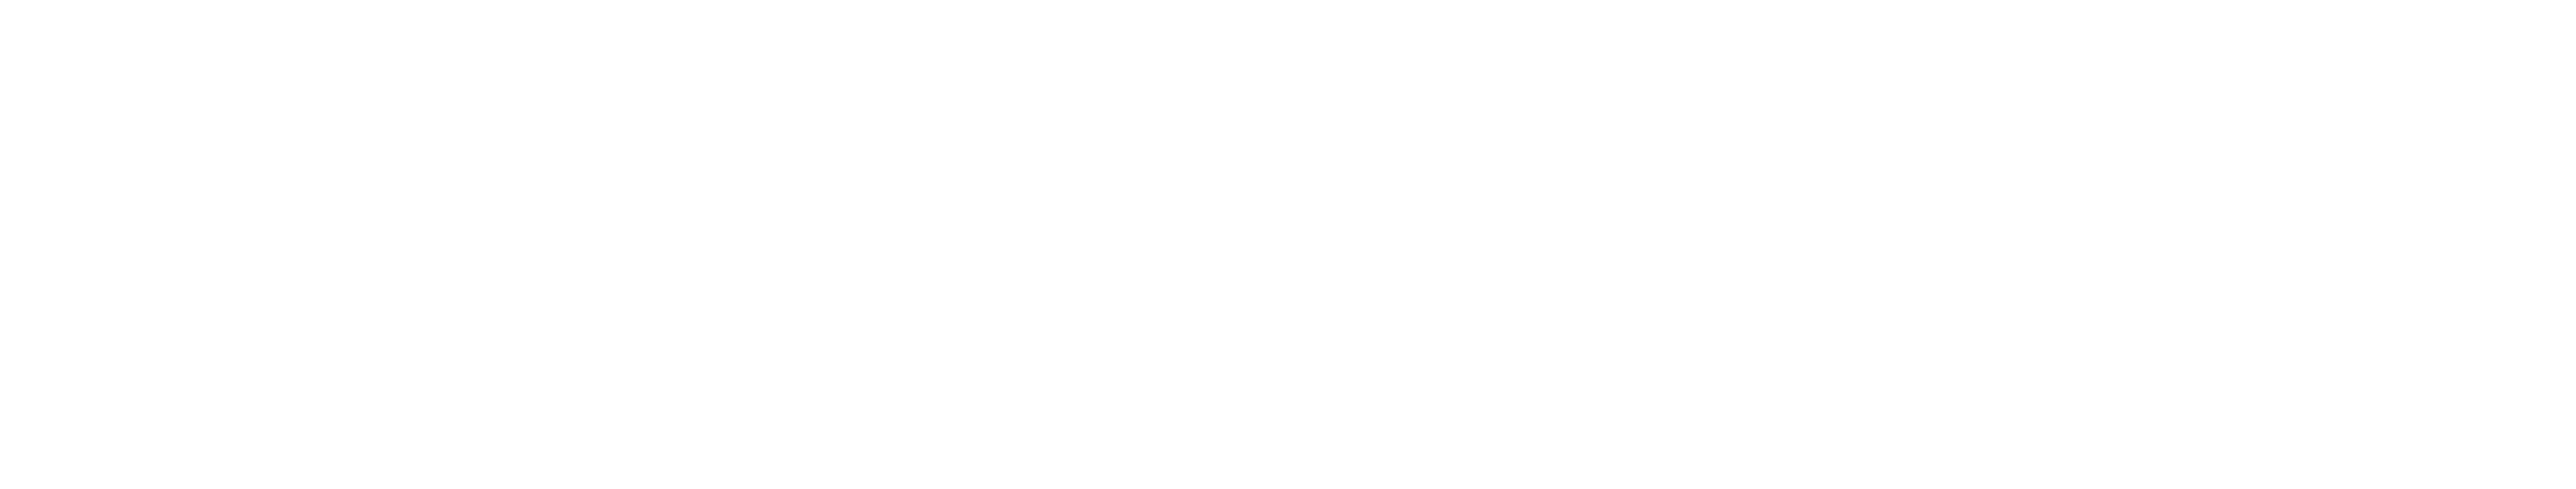 Logo Irisolaris Transition Énergétique